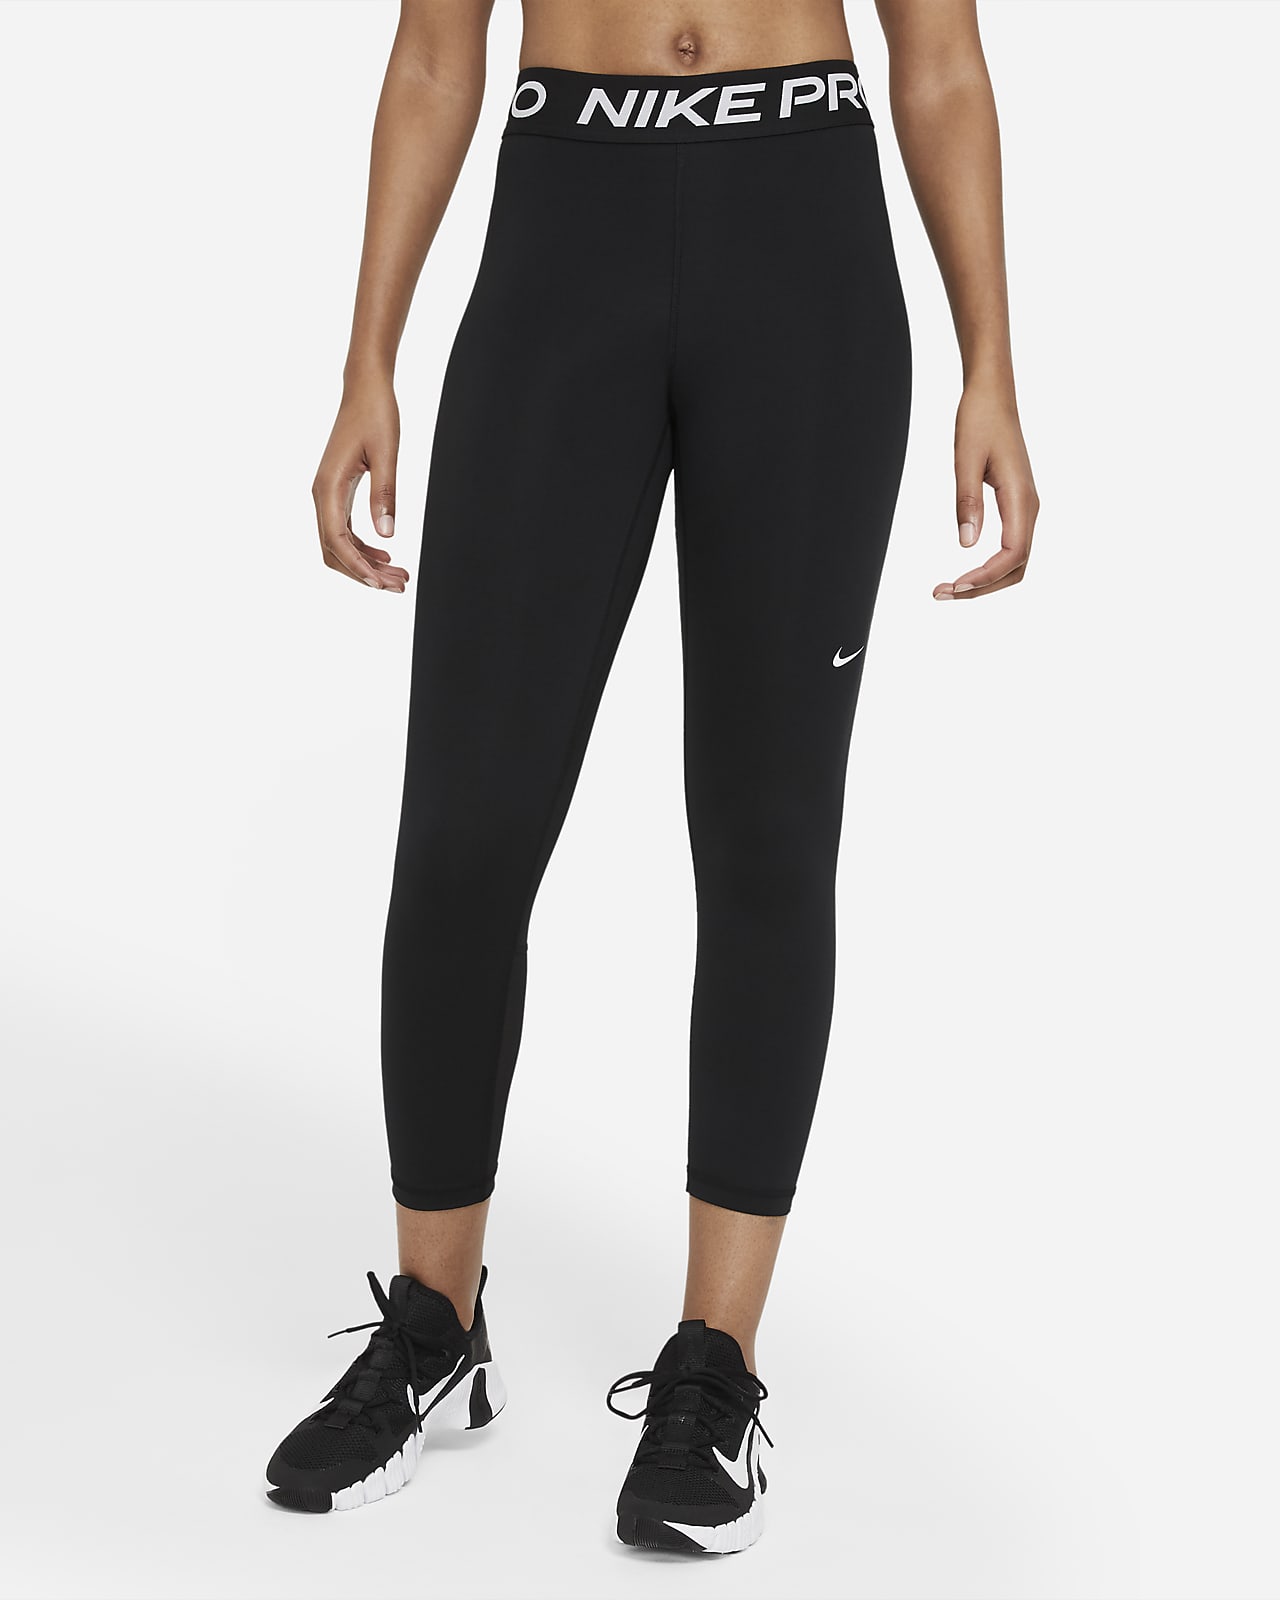 Legging court taille mi-haute à empiècements en mesh Nike Pro pour femme